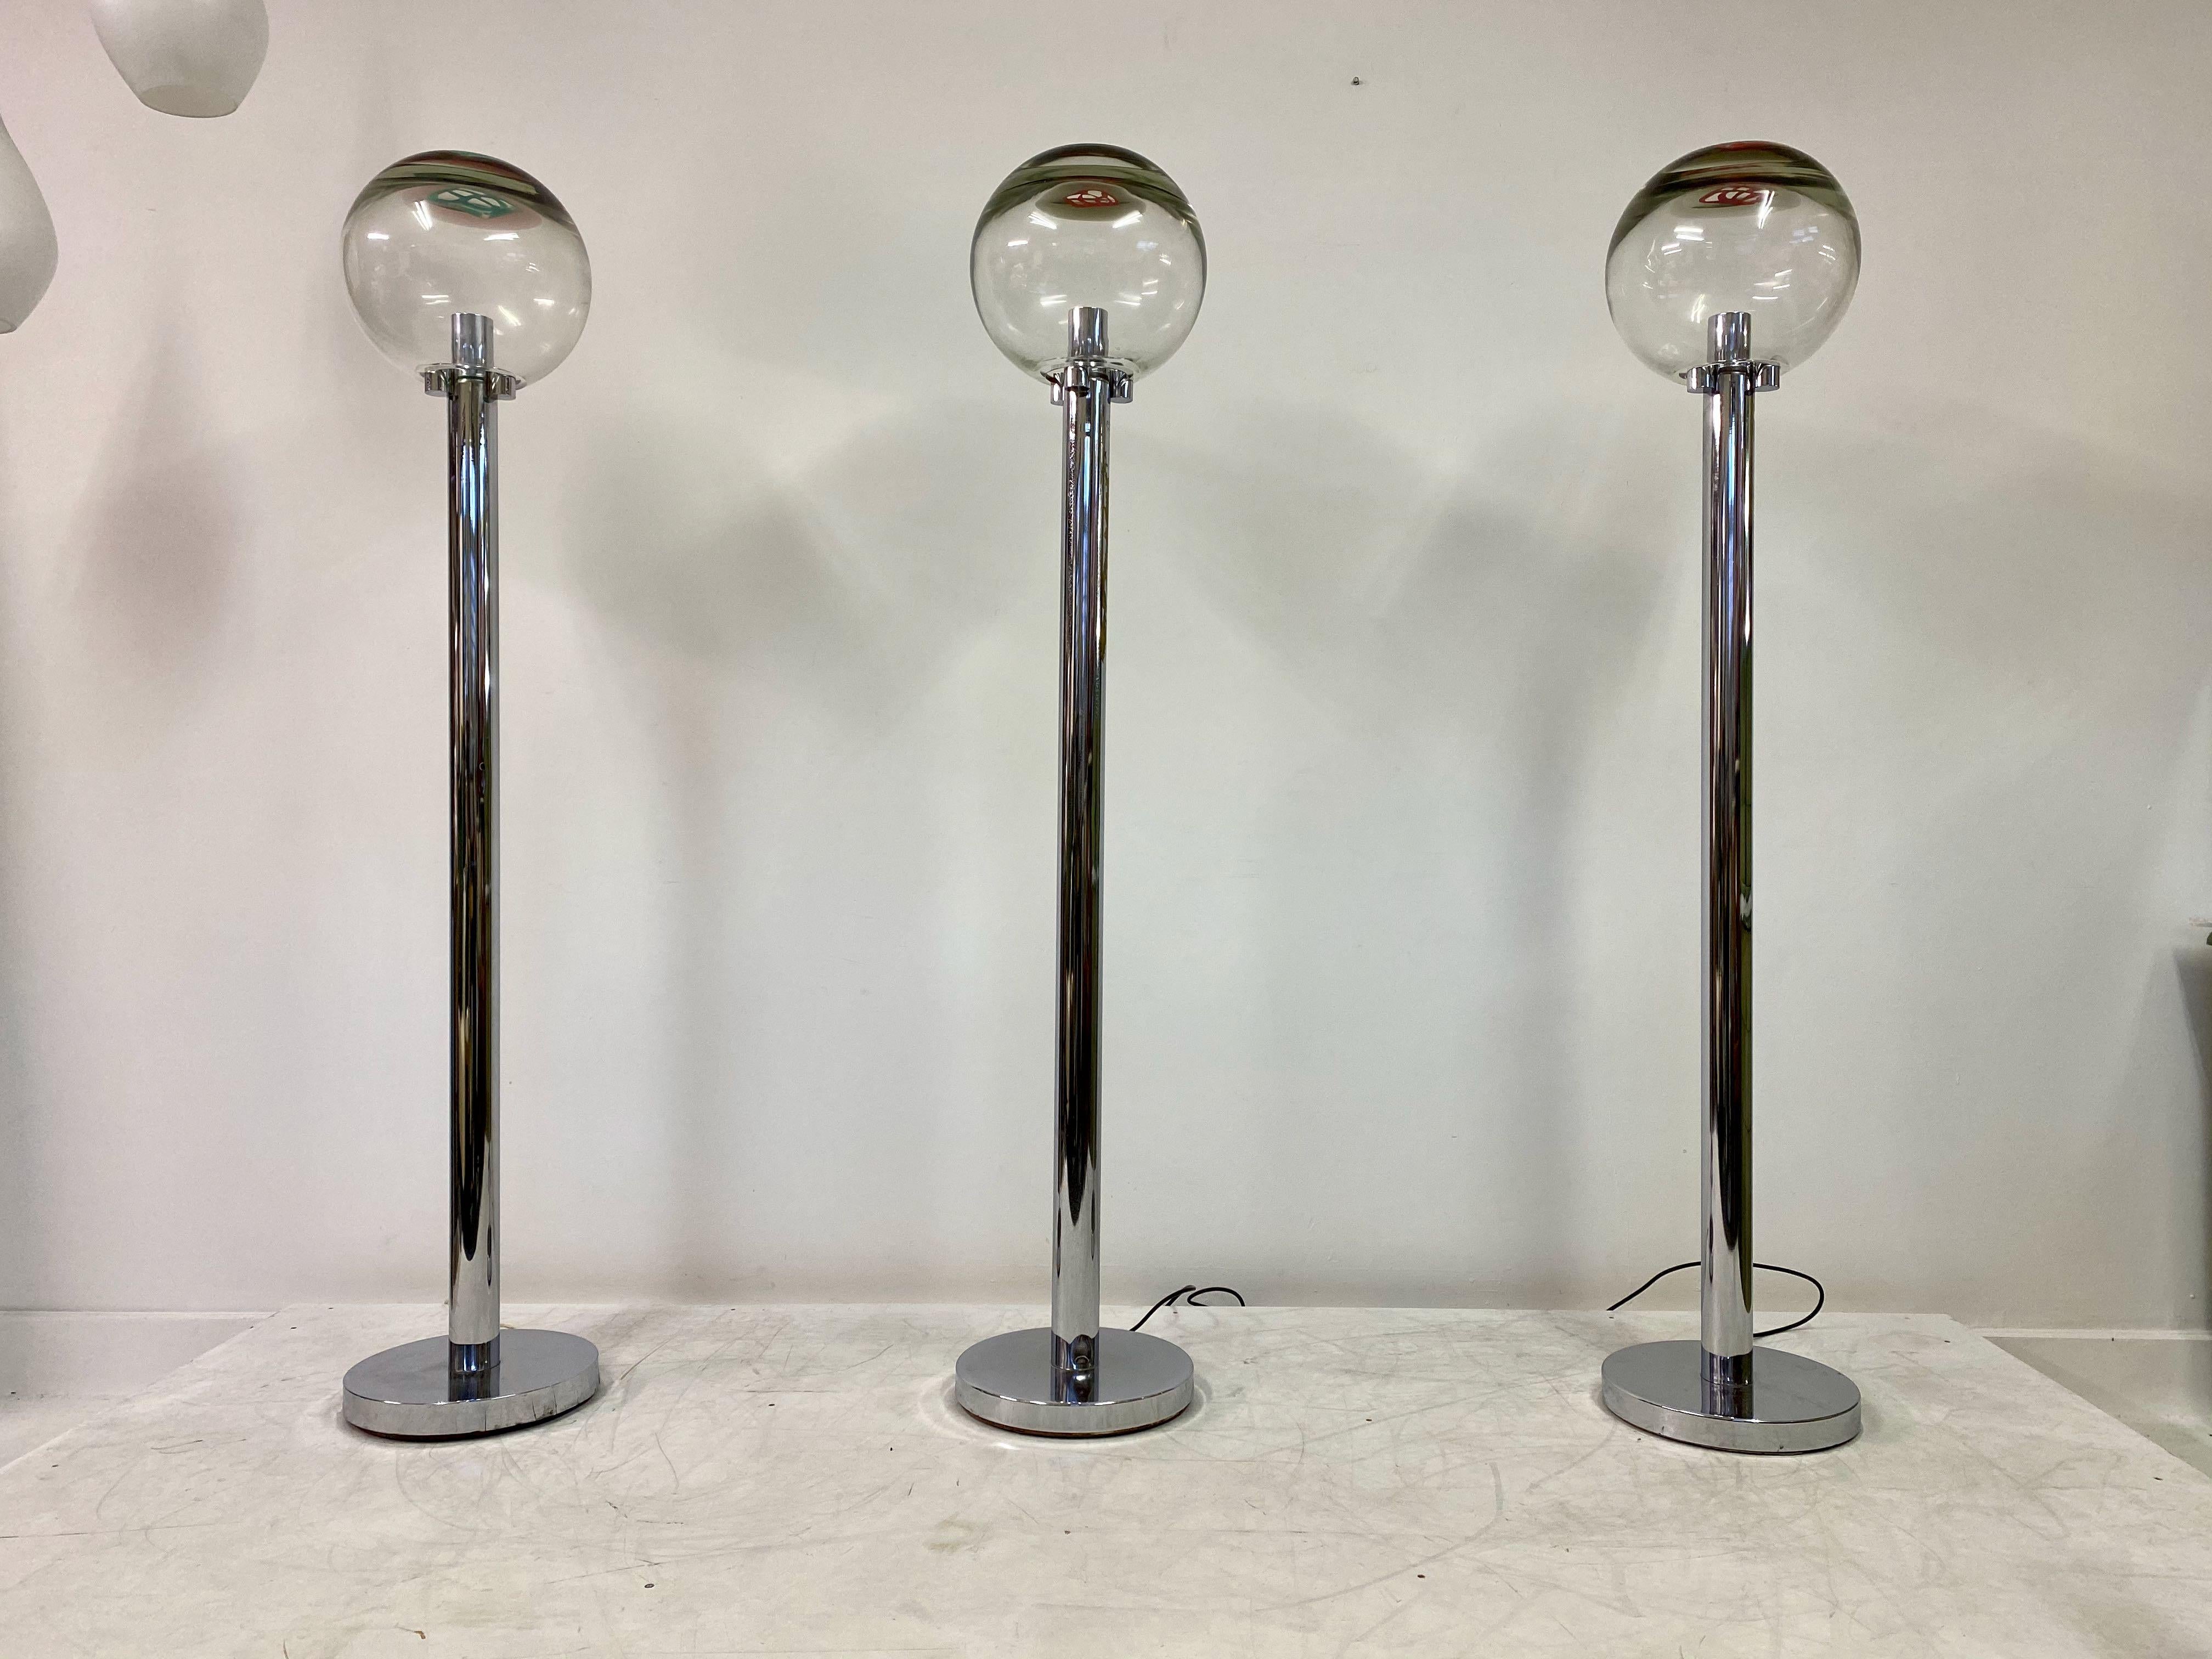 Paire de lampes standard (il s'agissait d'un ensemble de trois mais l'une d'entre elles a été vendue)

Grata par Ludovico Diaz de Santillana

Fabriqué par Venini, Murano

Abat-jour en verre Murrine

Tiges et base chromées

années 1970, Italie

Vendu